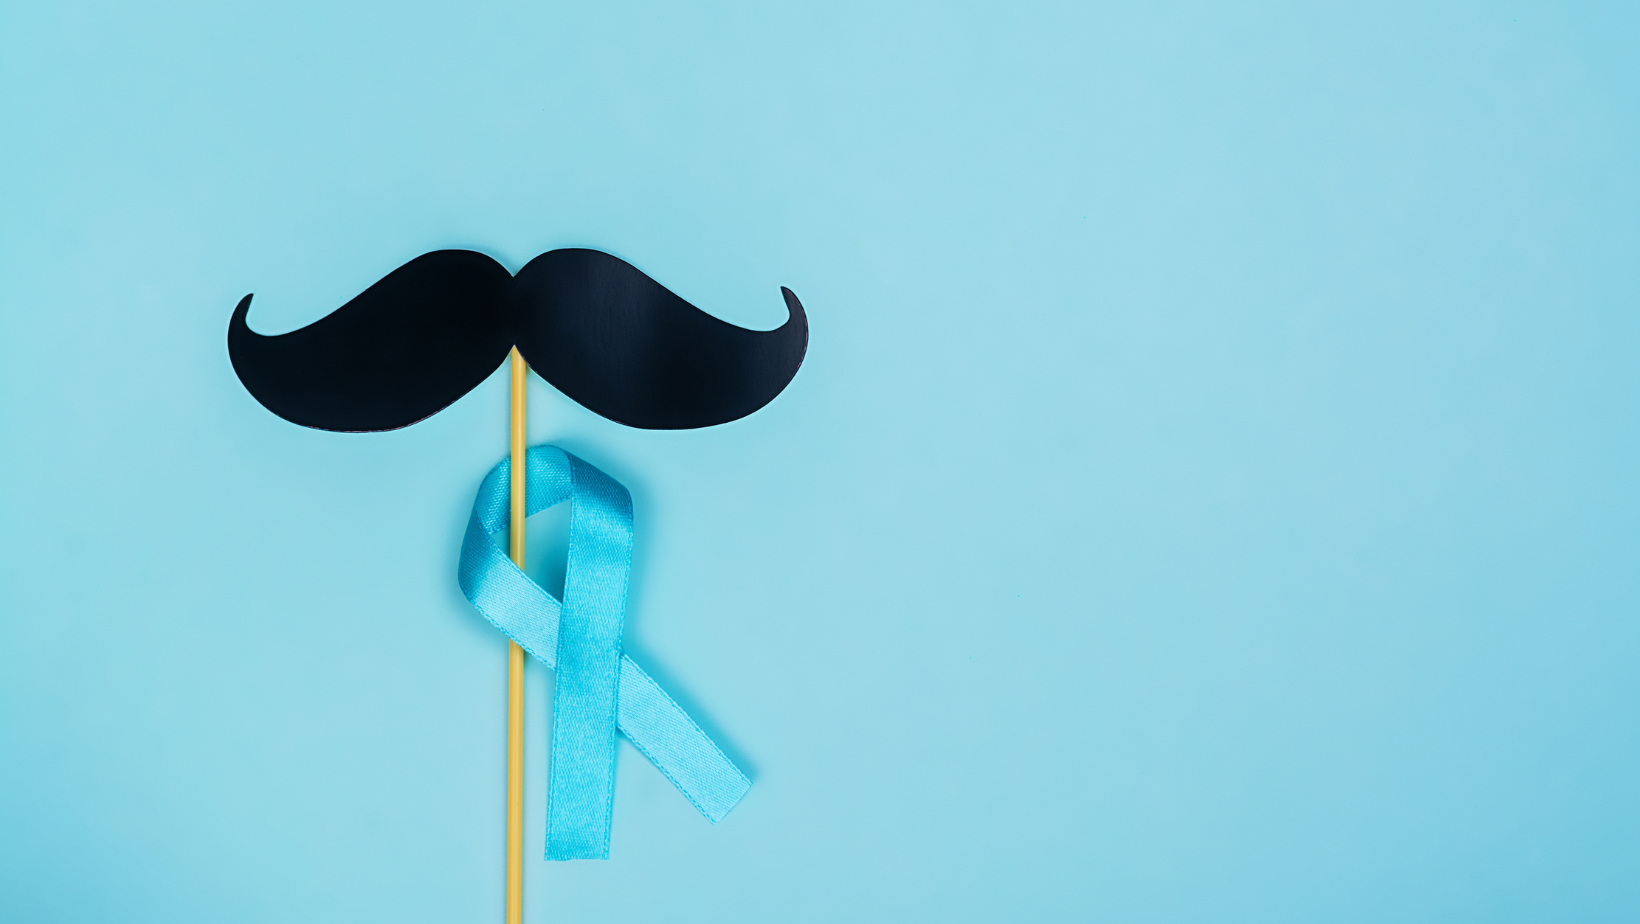     Movember : mois de lutte contre le cancer de la prostate

